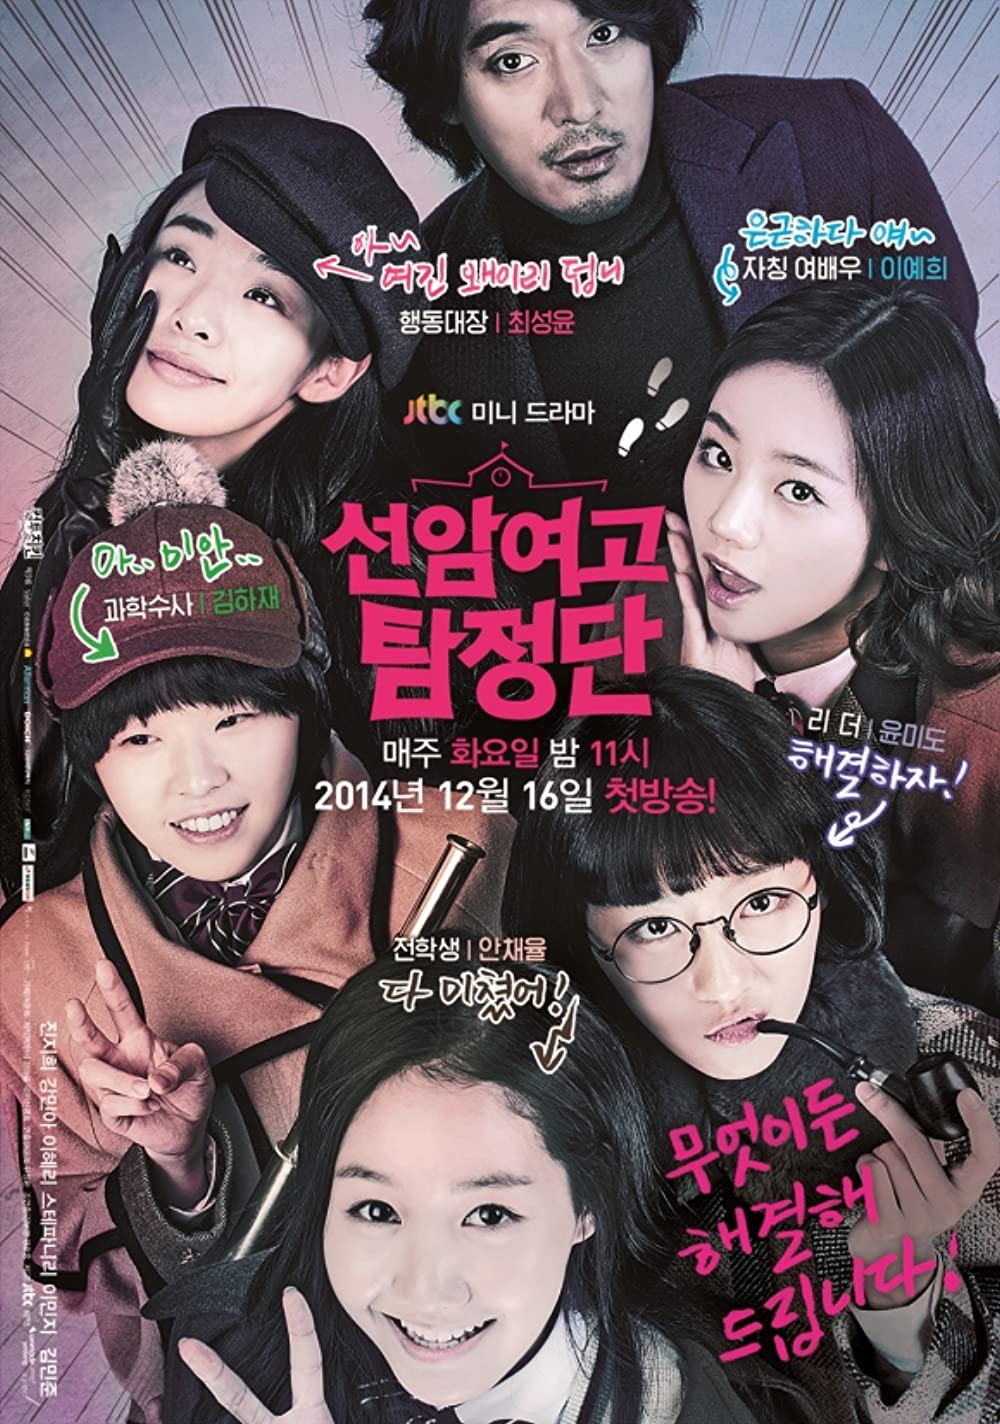 11 Drama Korea geng sekolah, kisah persahabatan hingga cerita misteri